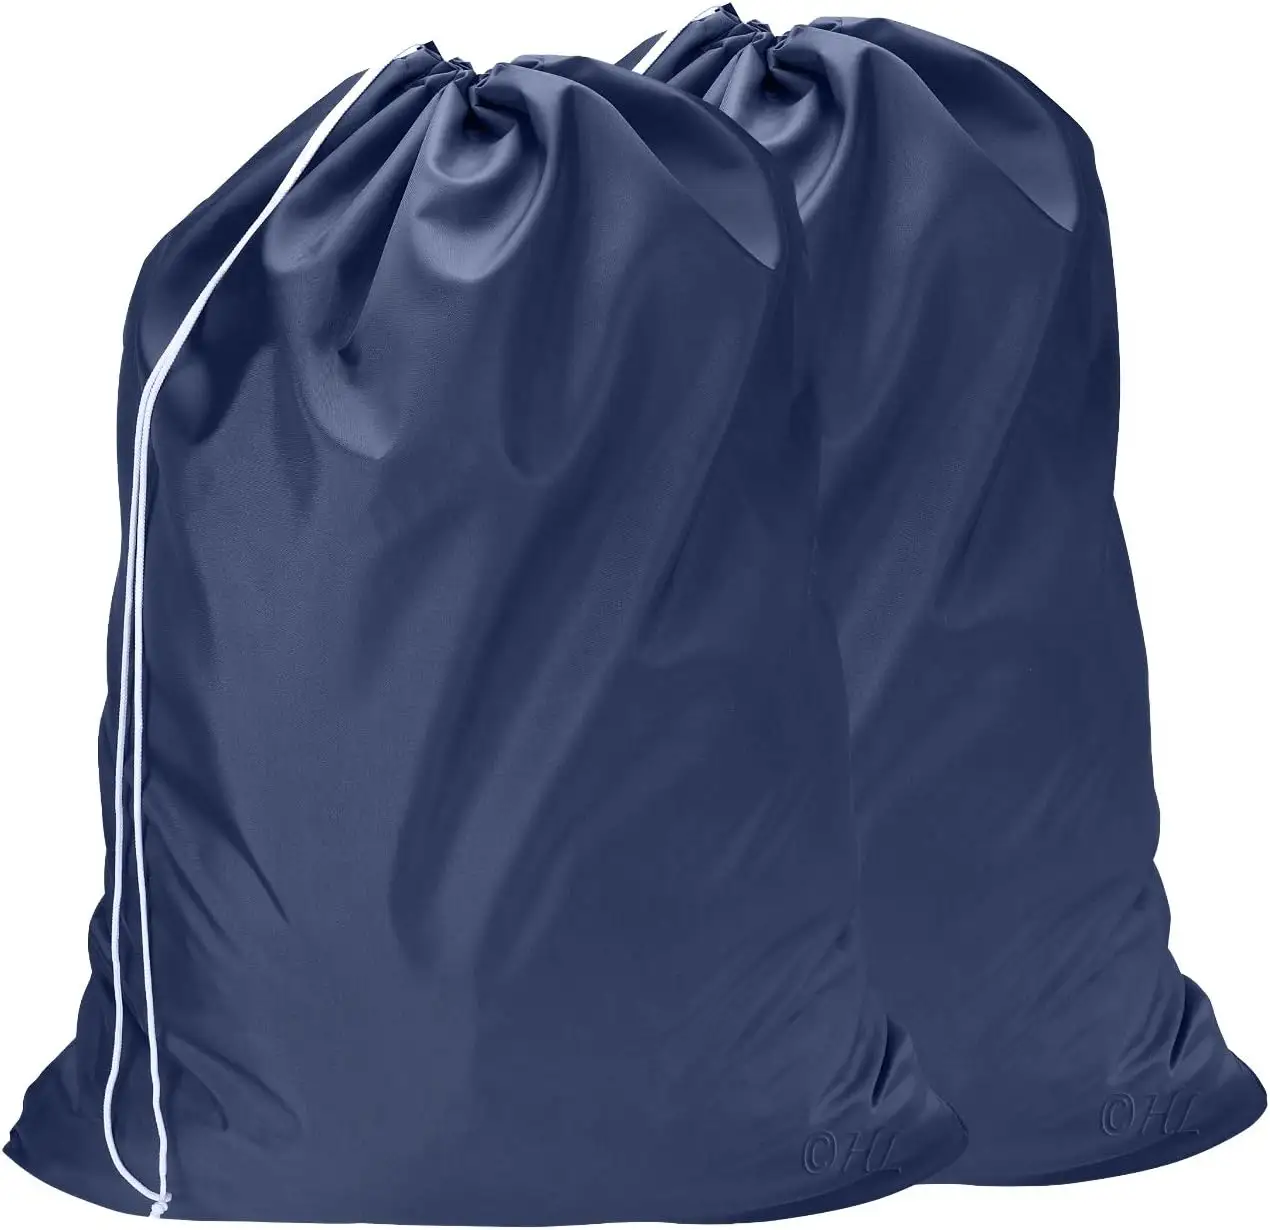 Professional manufacturer washable recycle foldable large drawstring custom logo nylon polyester laundry bag